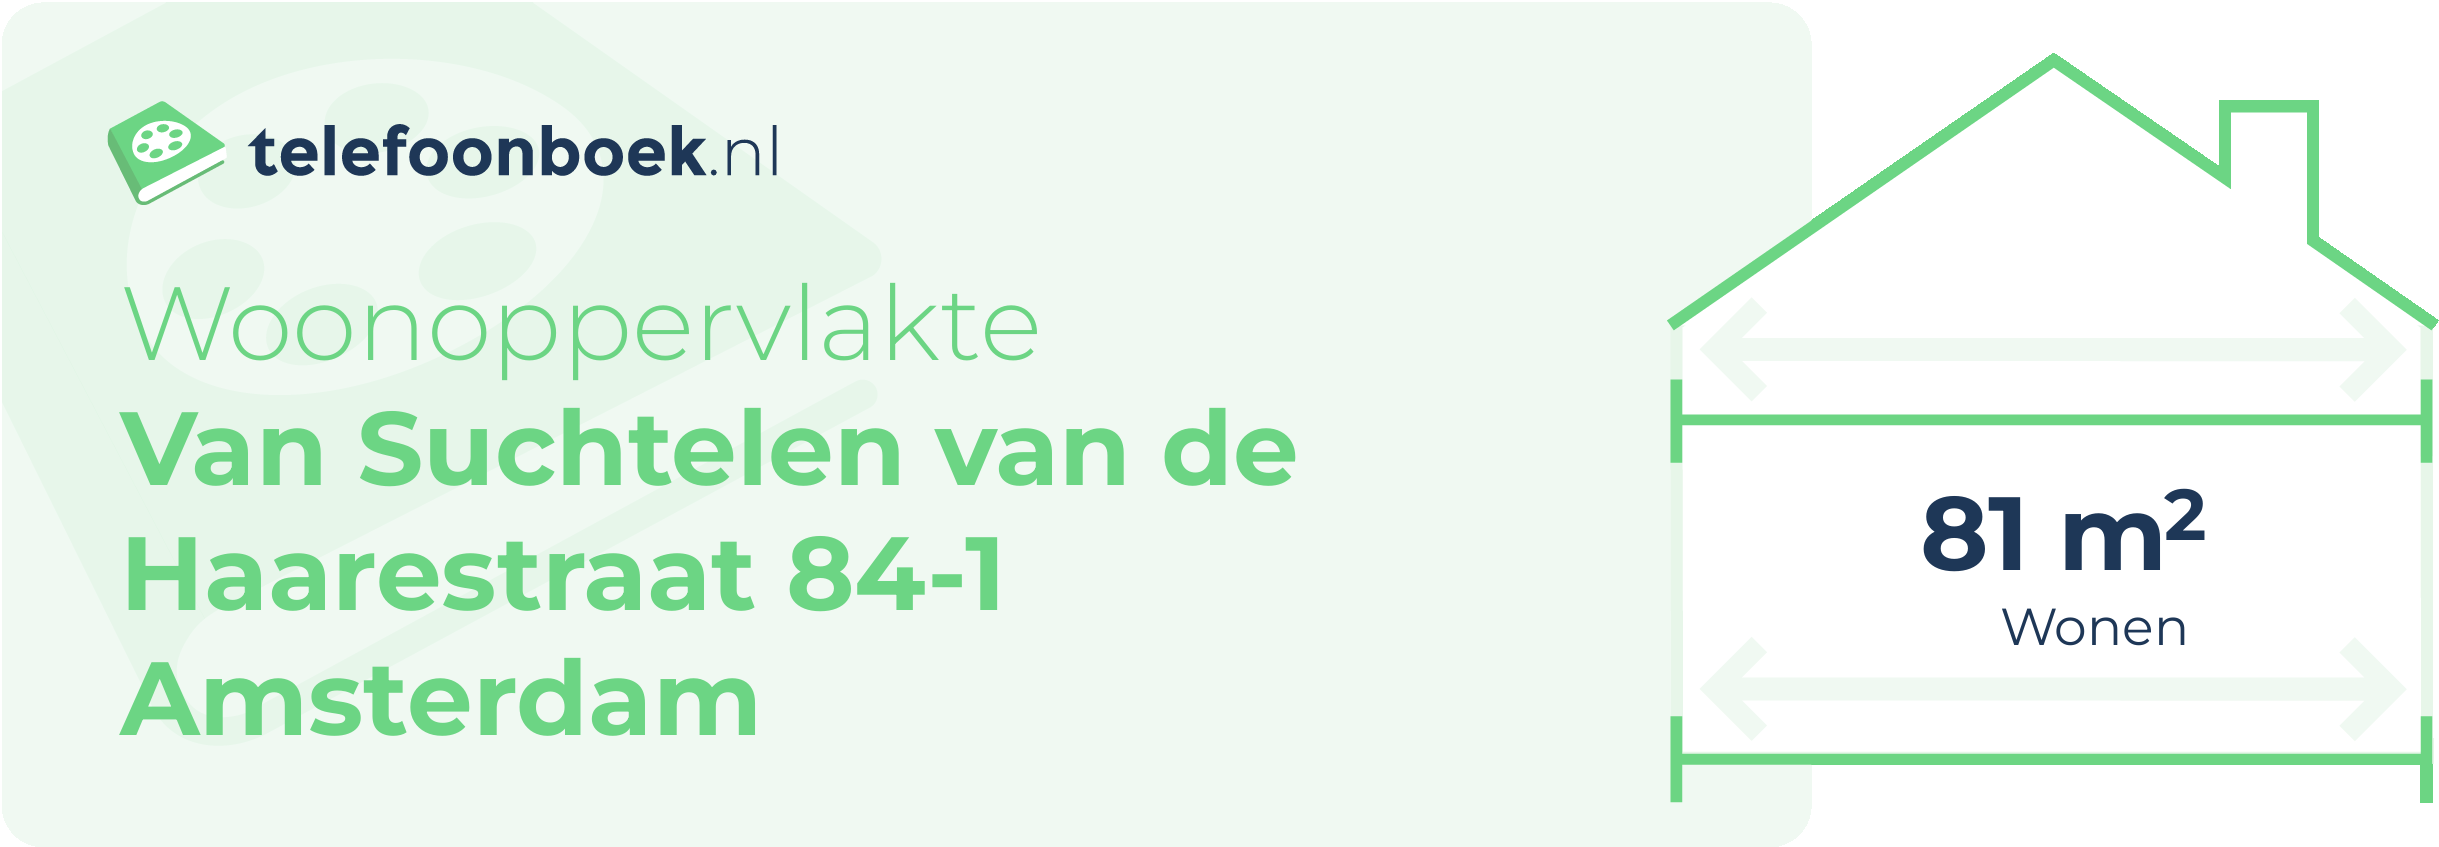 Woonoppervlakte Van Suchtelen Van De Haarestraat 84-1 Amsterdam